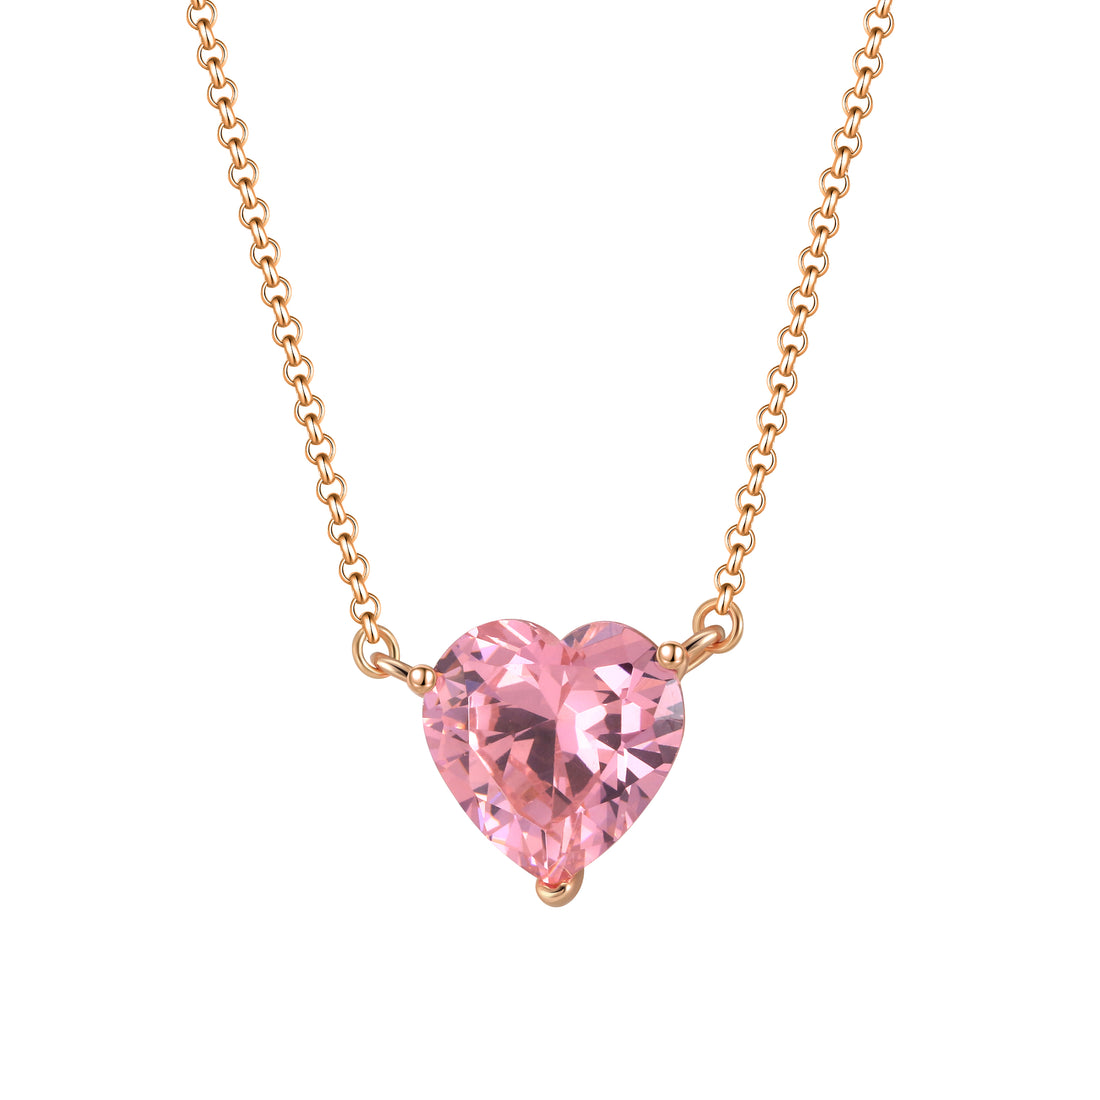 Pink Heart Prism - Rose Gold